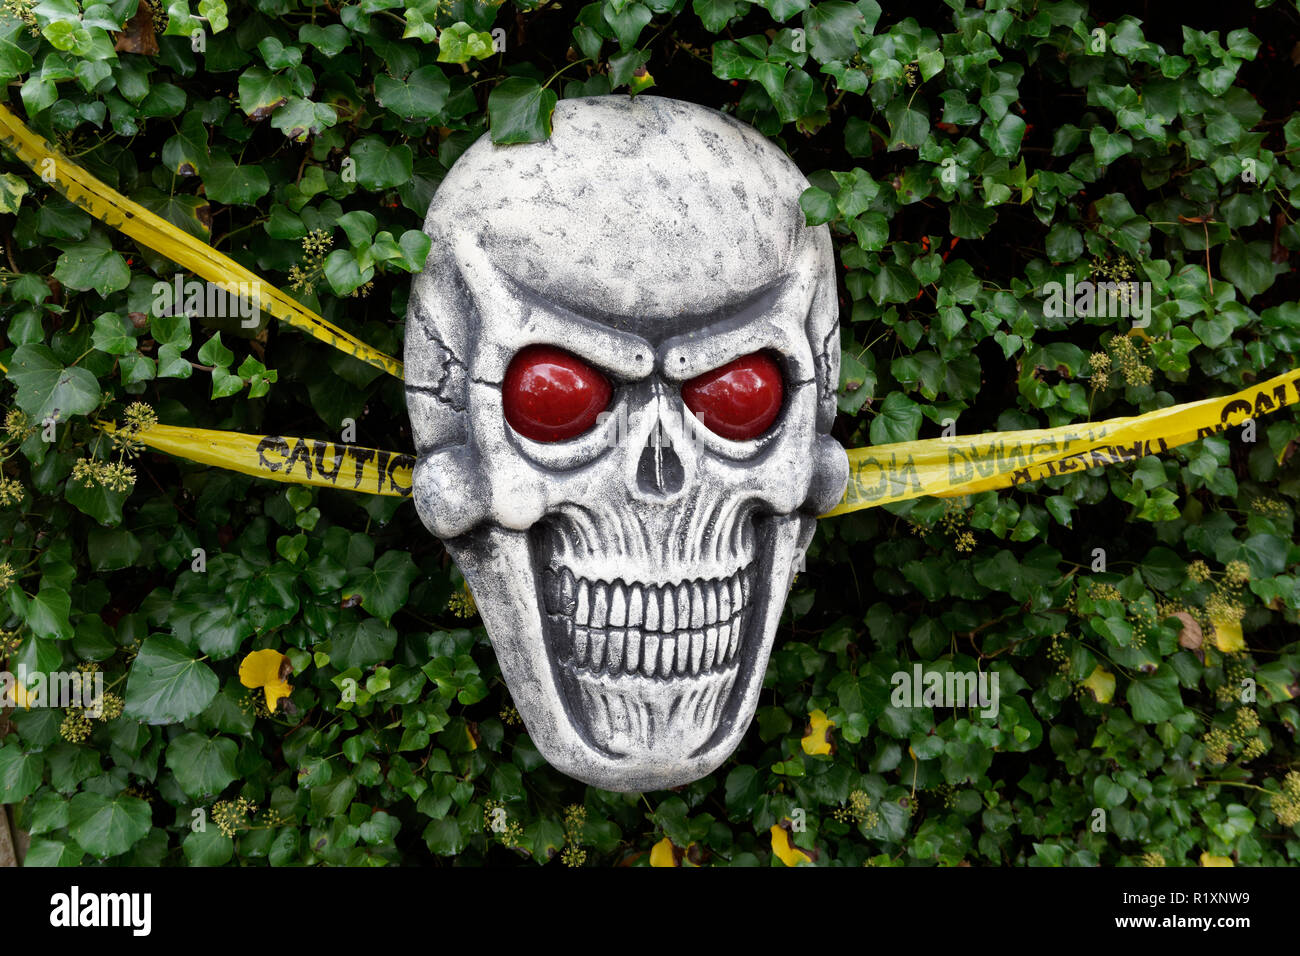 Erschreckend Halloween grinsenden totenkopf dekoration in einem Garten Stockfoto